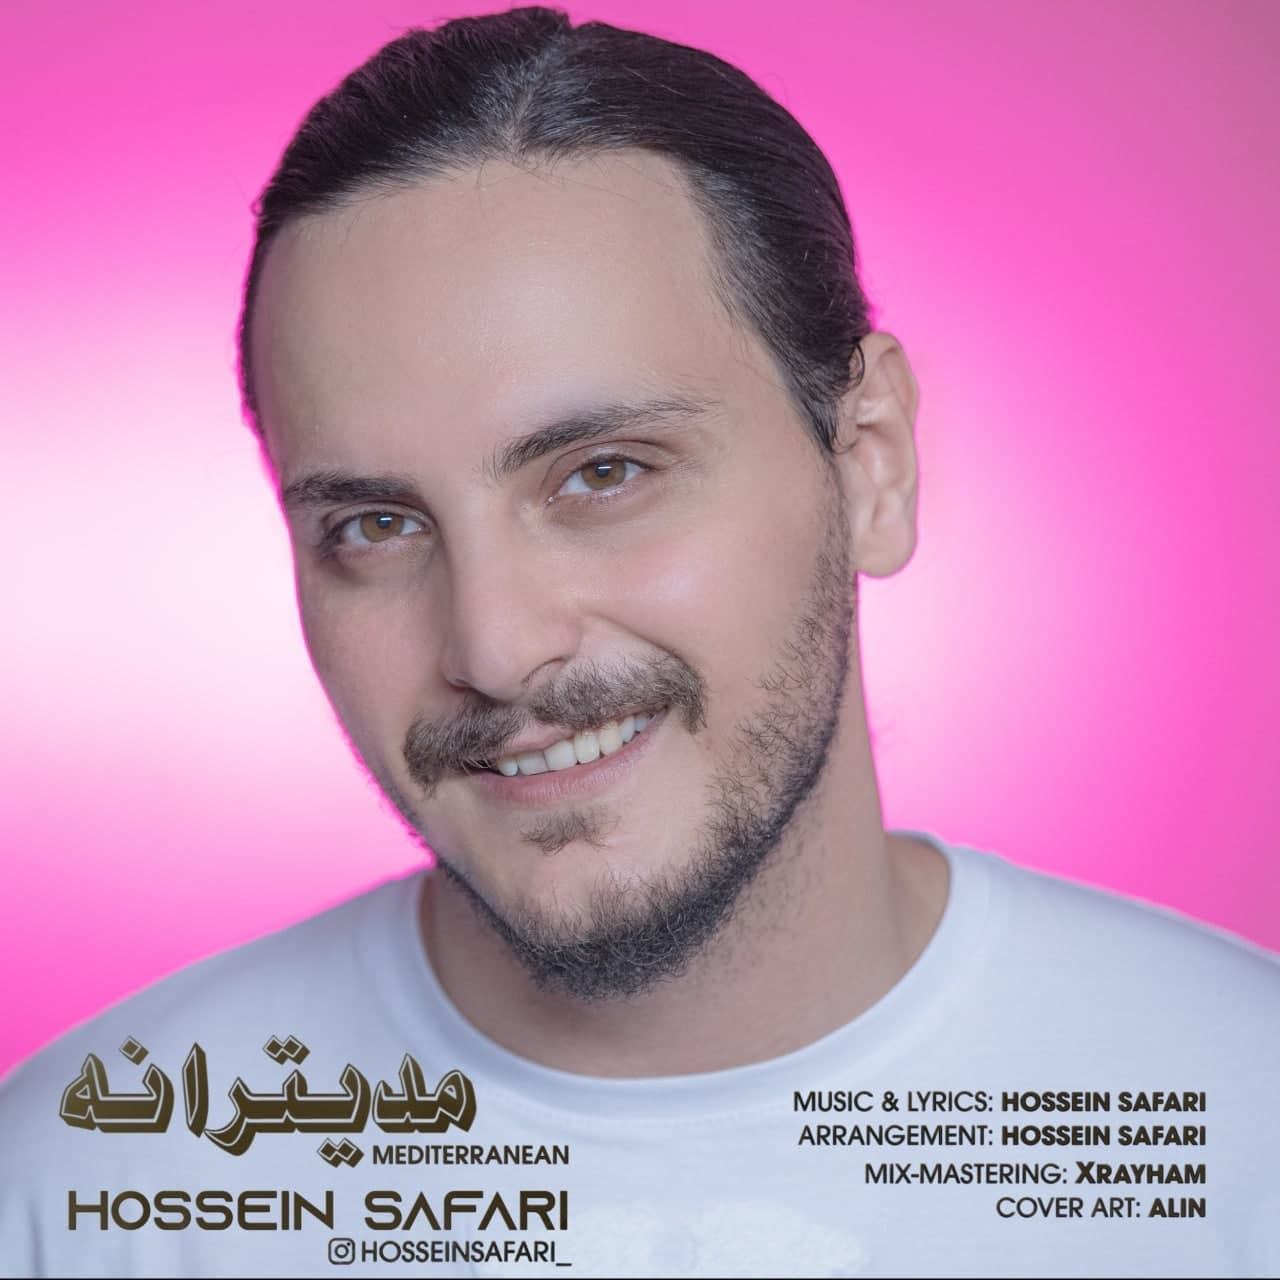 Hossein Safari – Mediterranean